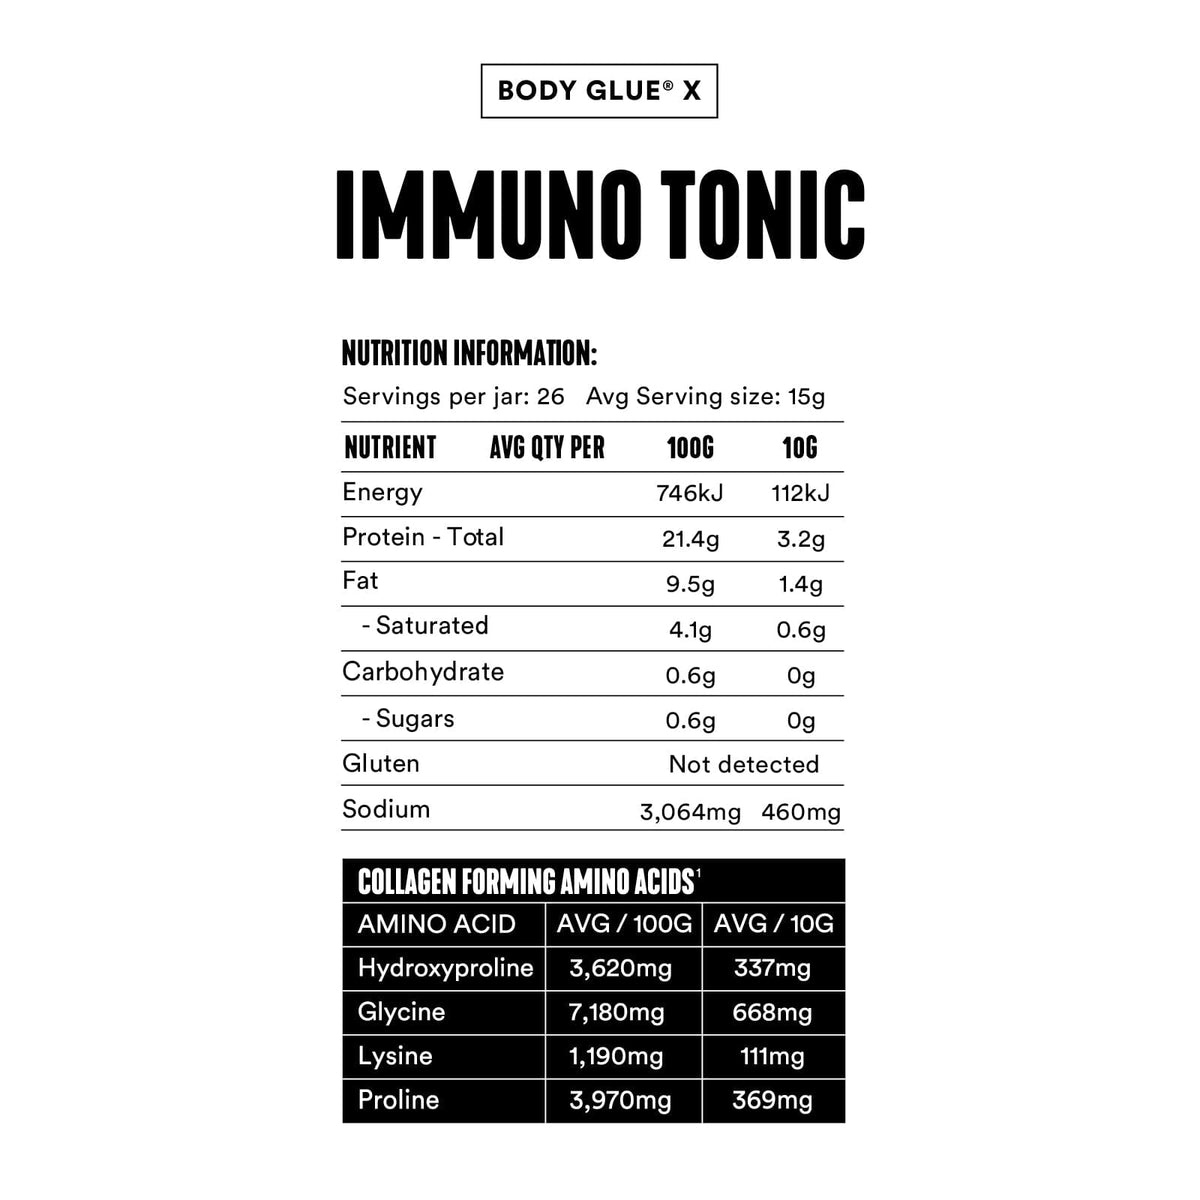 Immuno Tonic